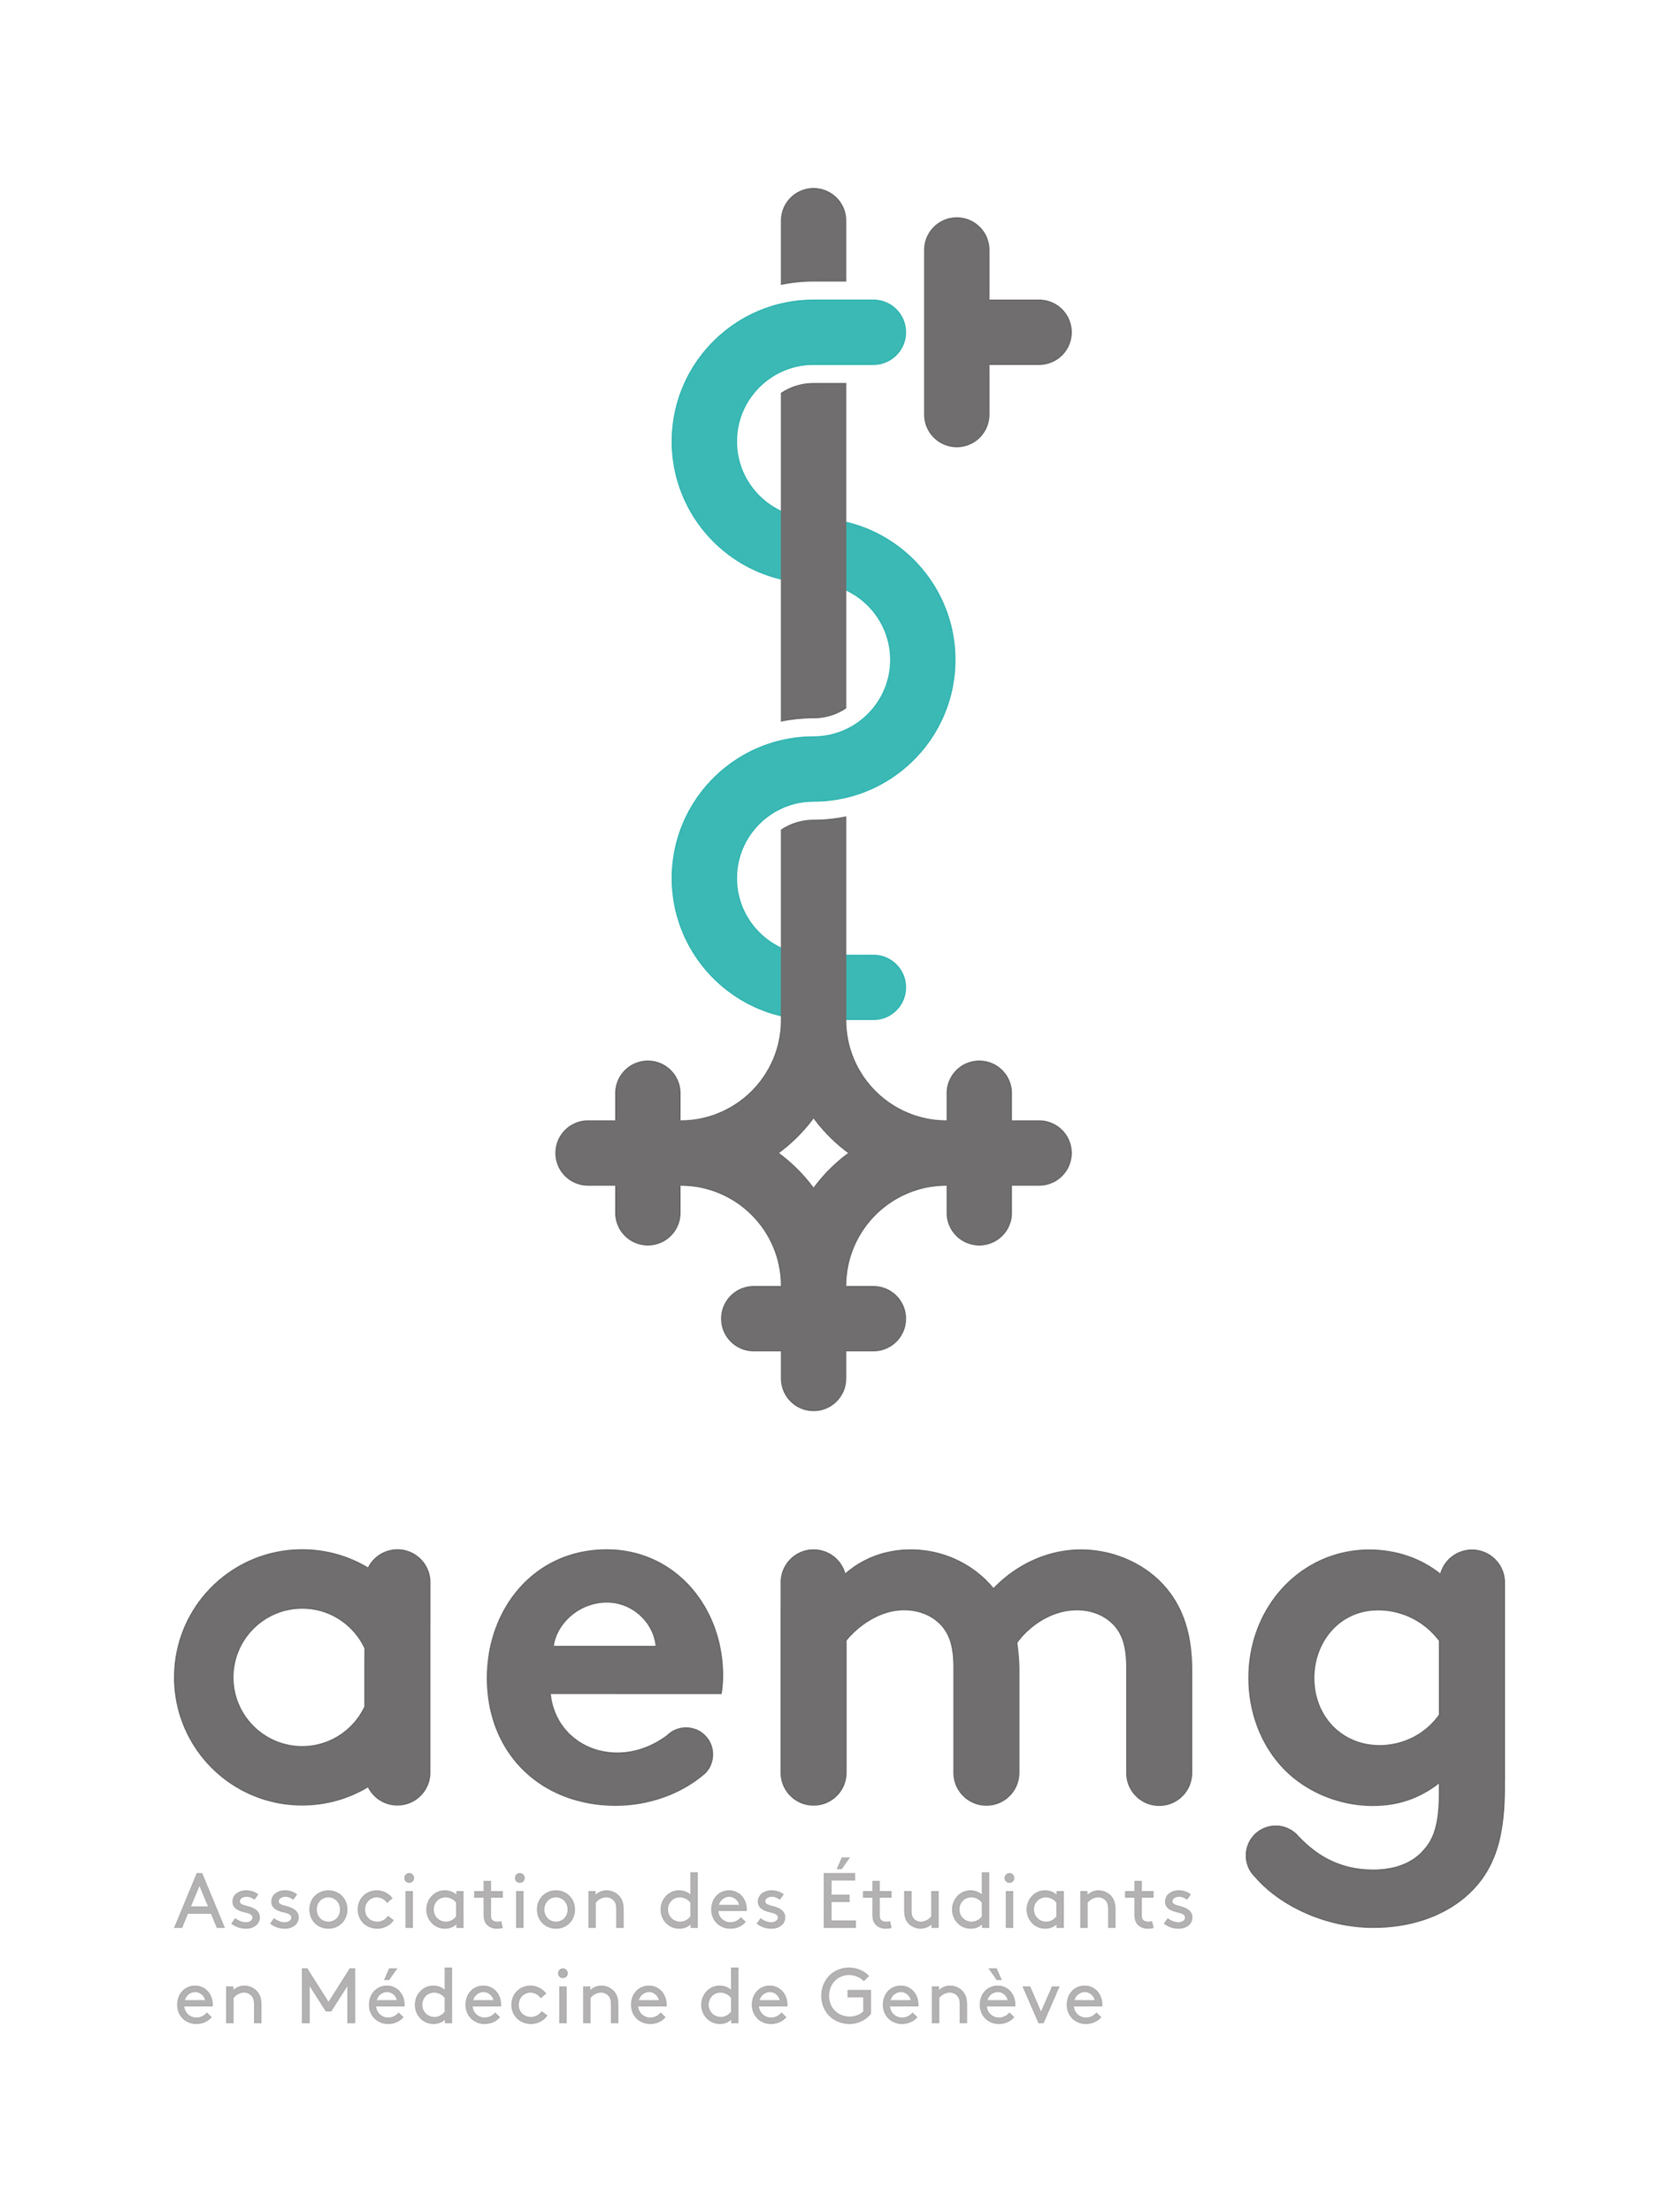 Logo_AEMG_RVB.jpg